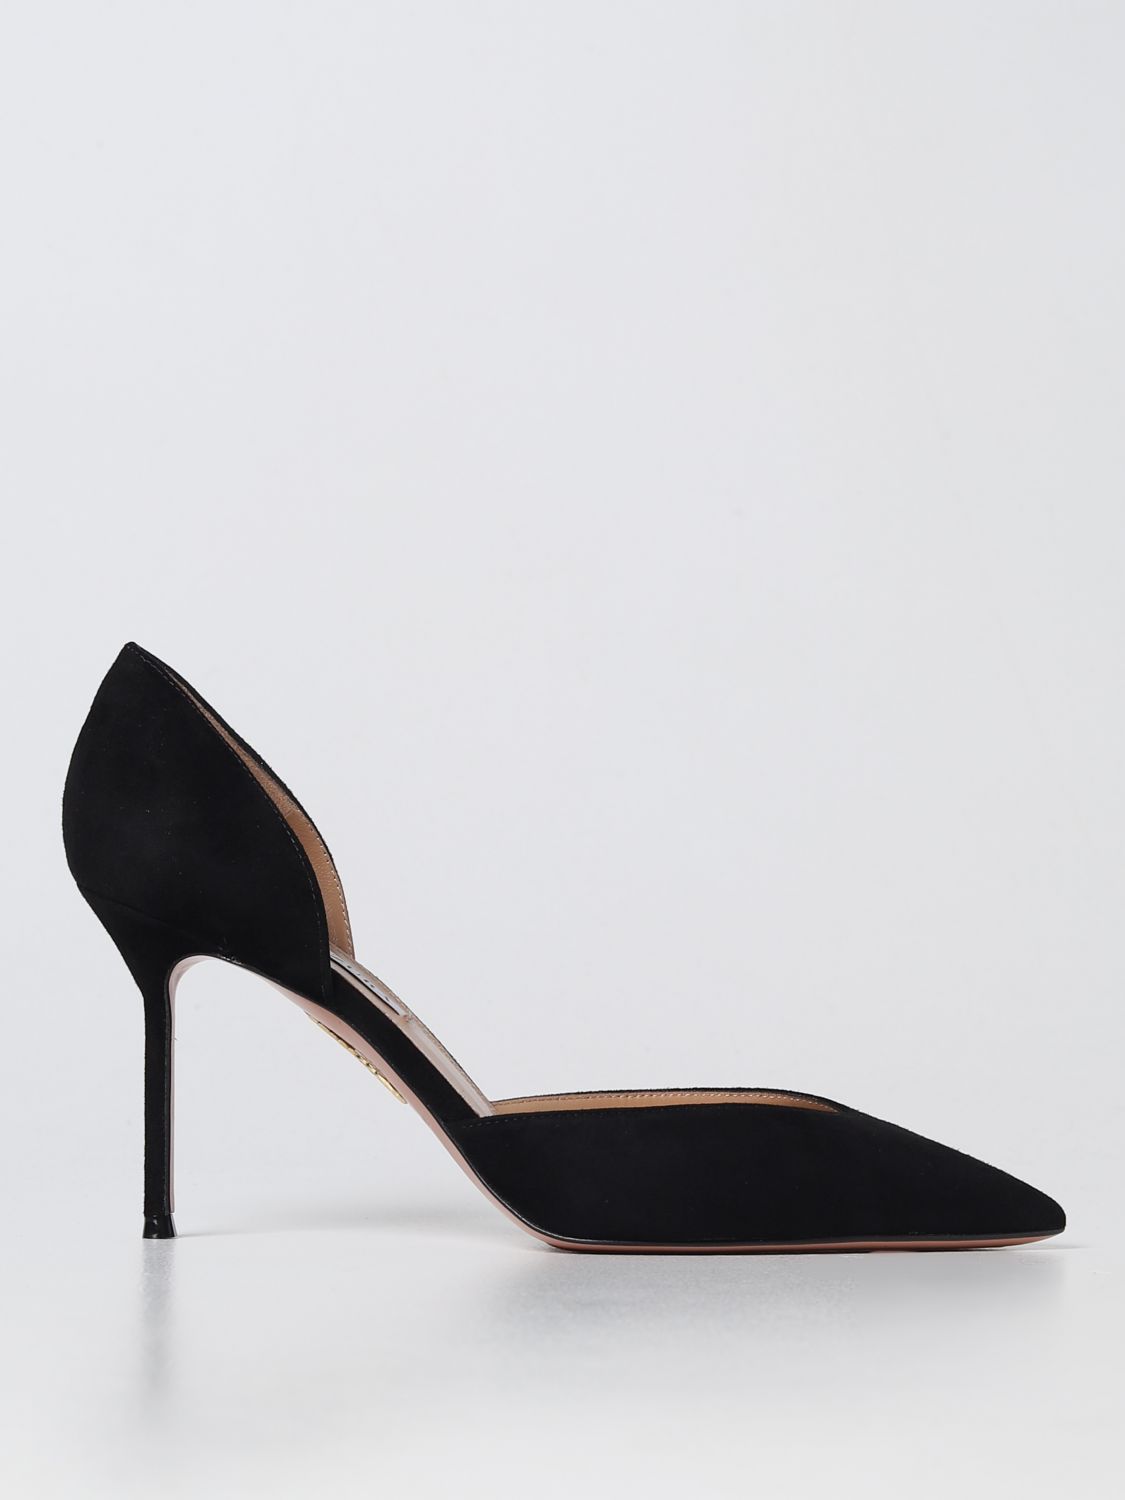 Aquazzura Outlet: high heel shoes for woman - Black | Aquazzura high ...